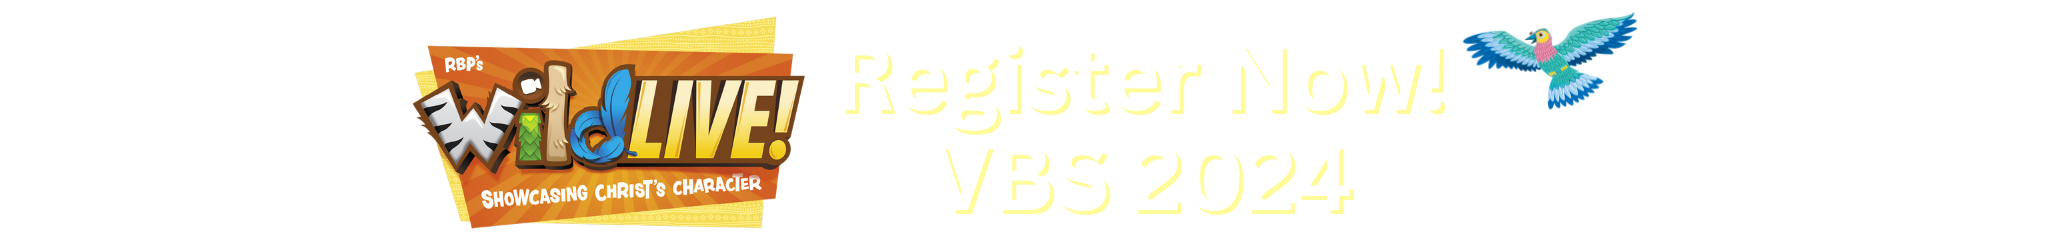 VBS REGISTRATION FORM BILLBOARD BANNER